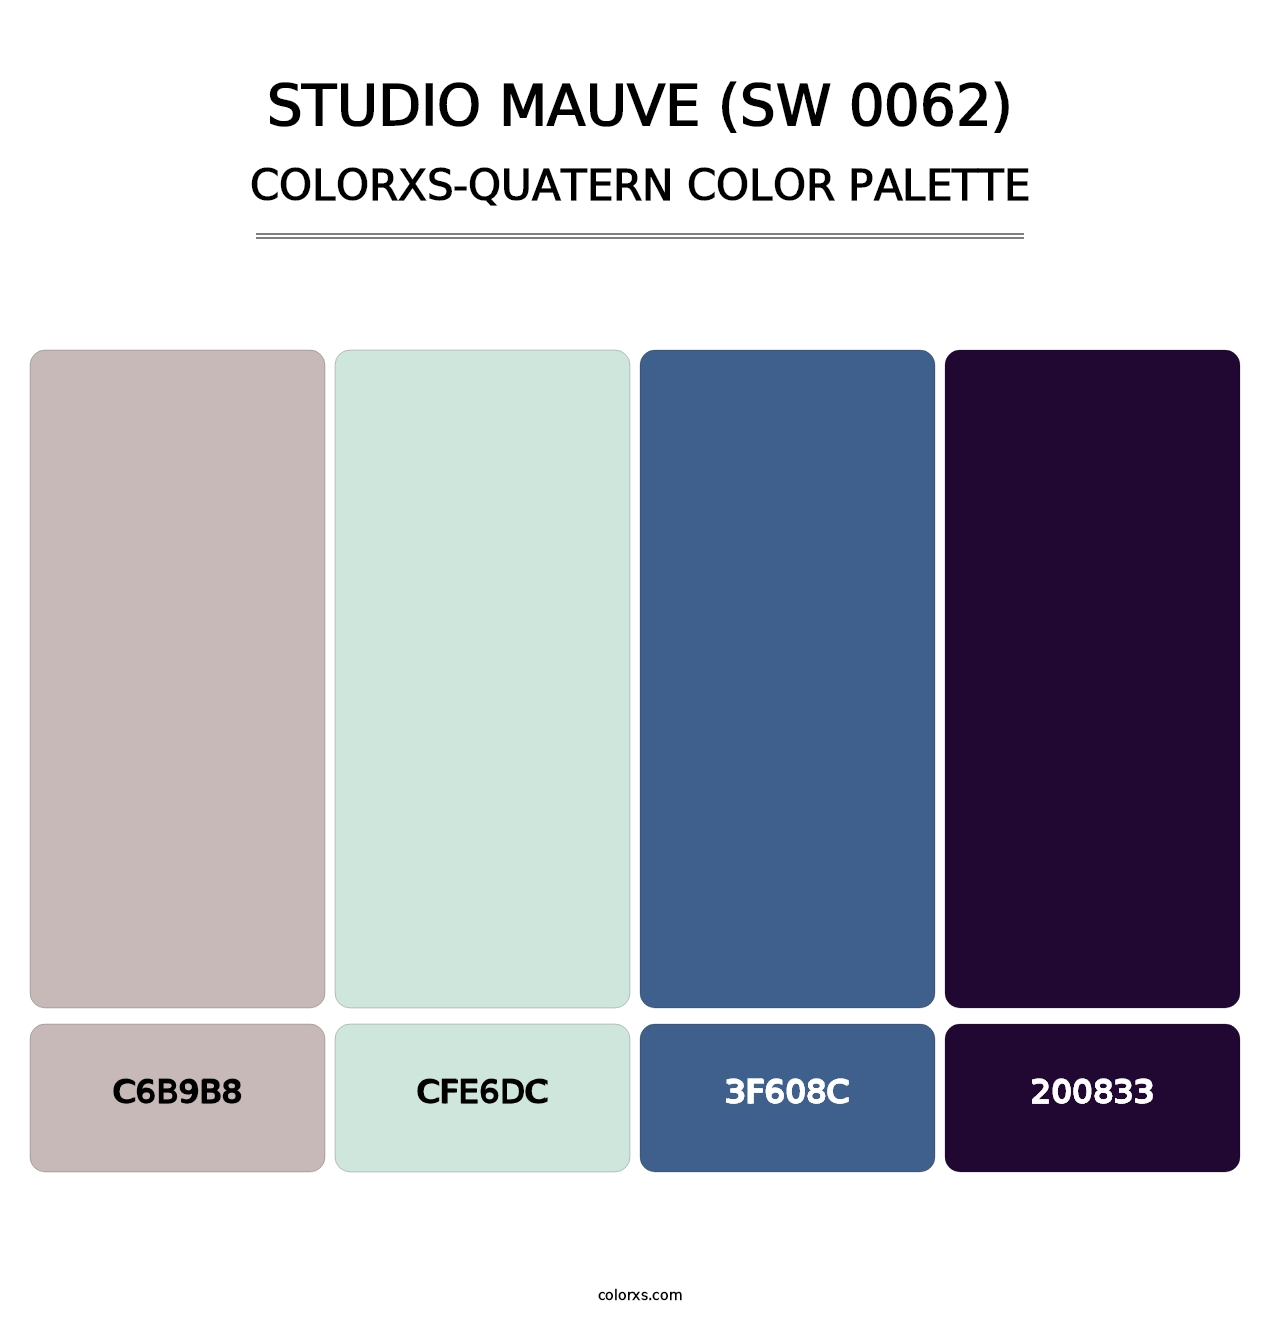 Studio Mauve (SW 0062) - Colorxs Quatern Palette